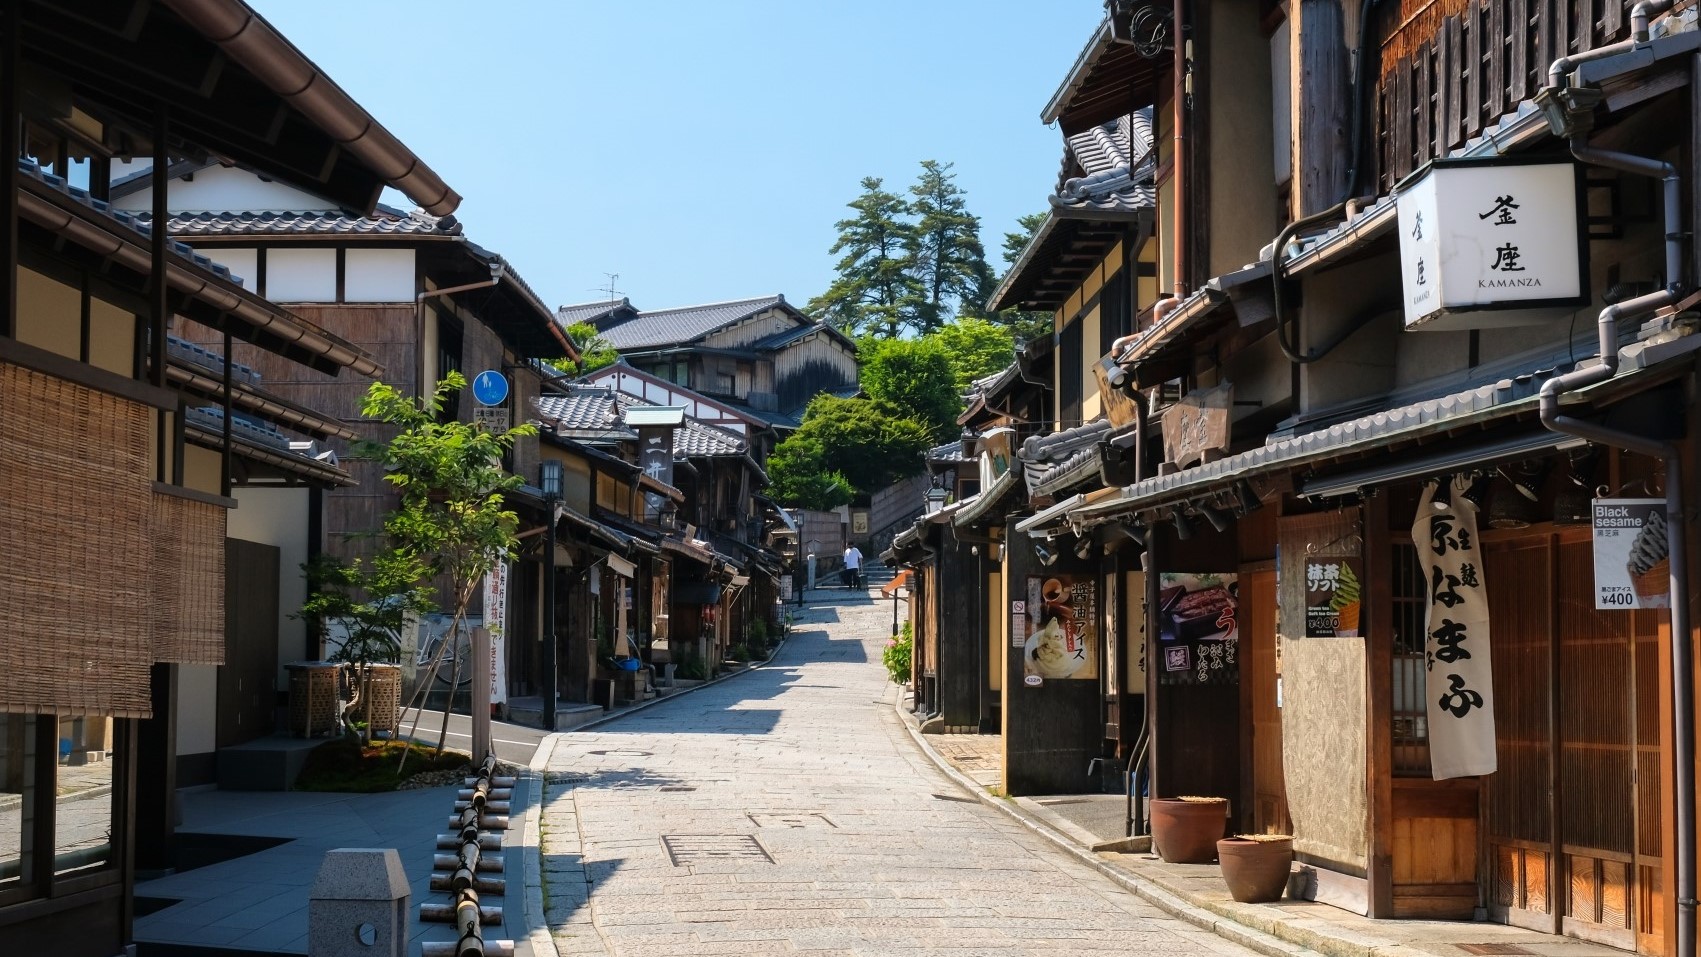 清水坂清水寺に続く参道。食べ物やお土産屋さんが軒を連ねます。